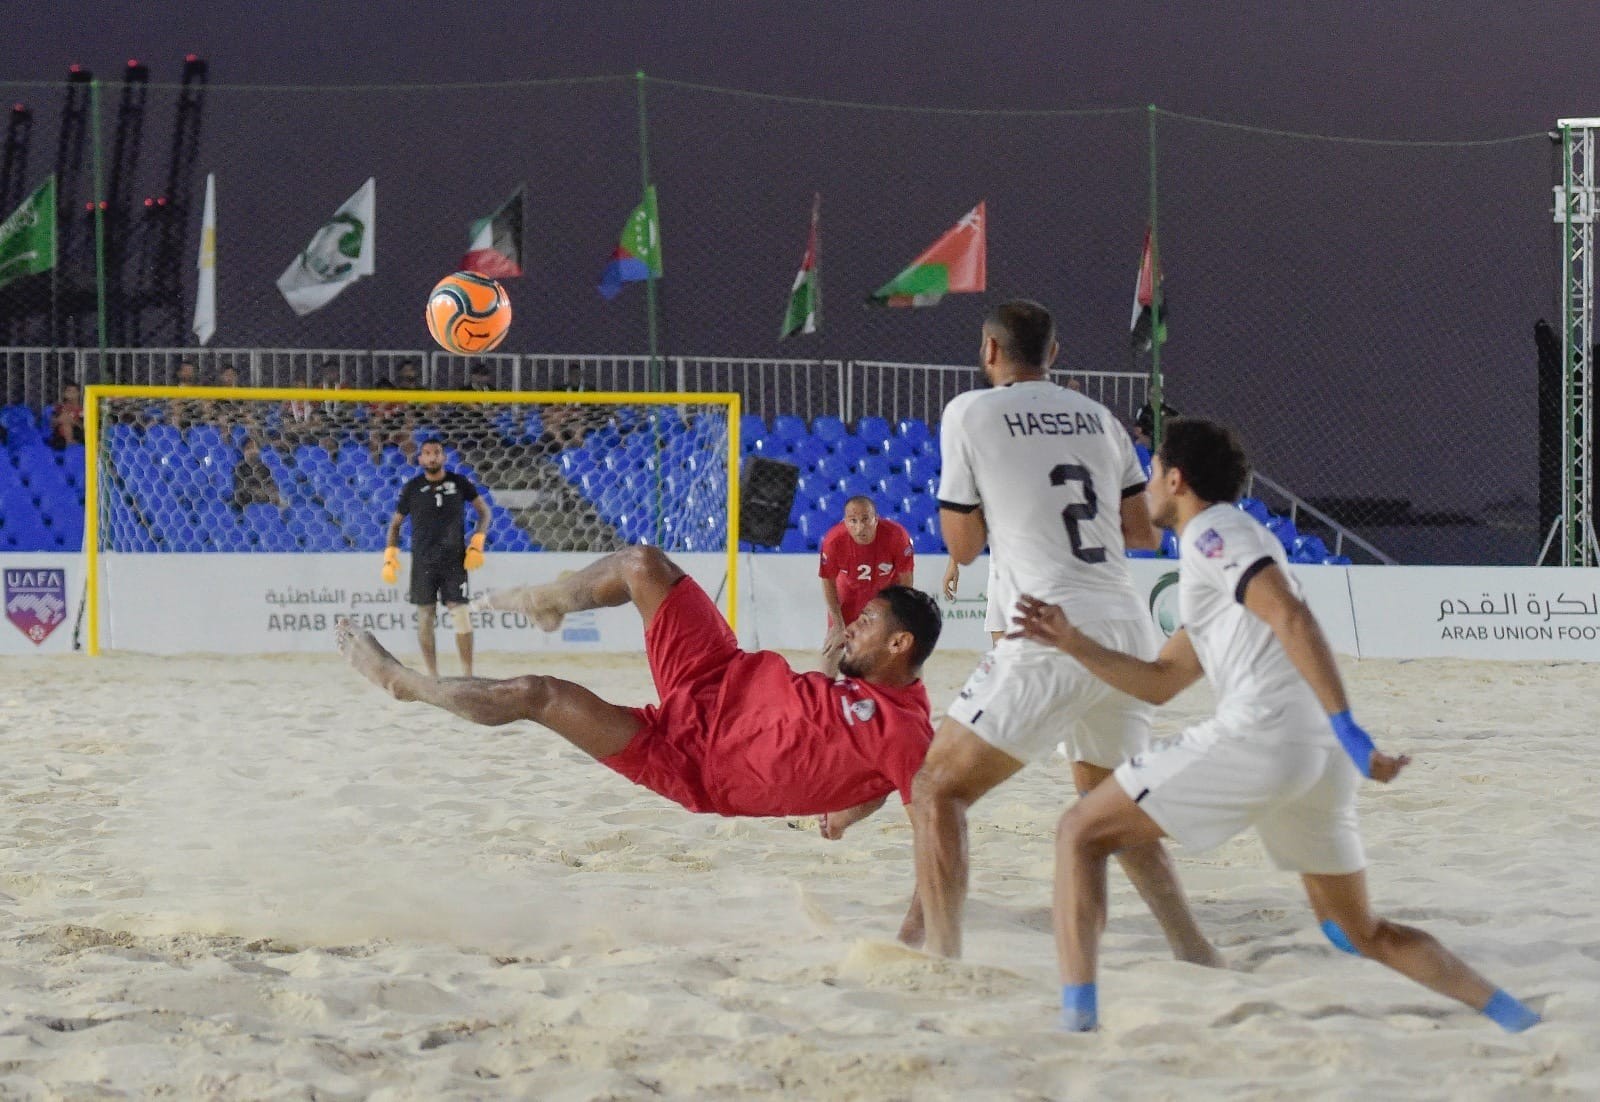 بالصور : مصر تعبر فلسطين بصعوبة وتصعد لنهائي كأس العرب للشاطئية